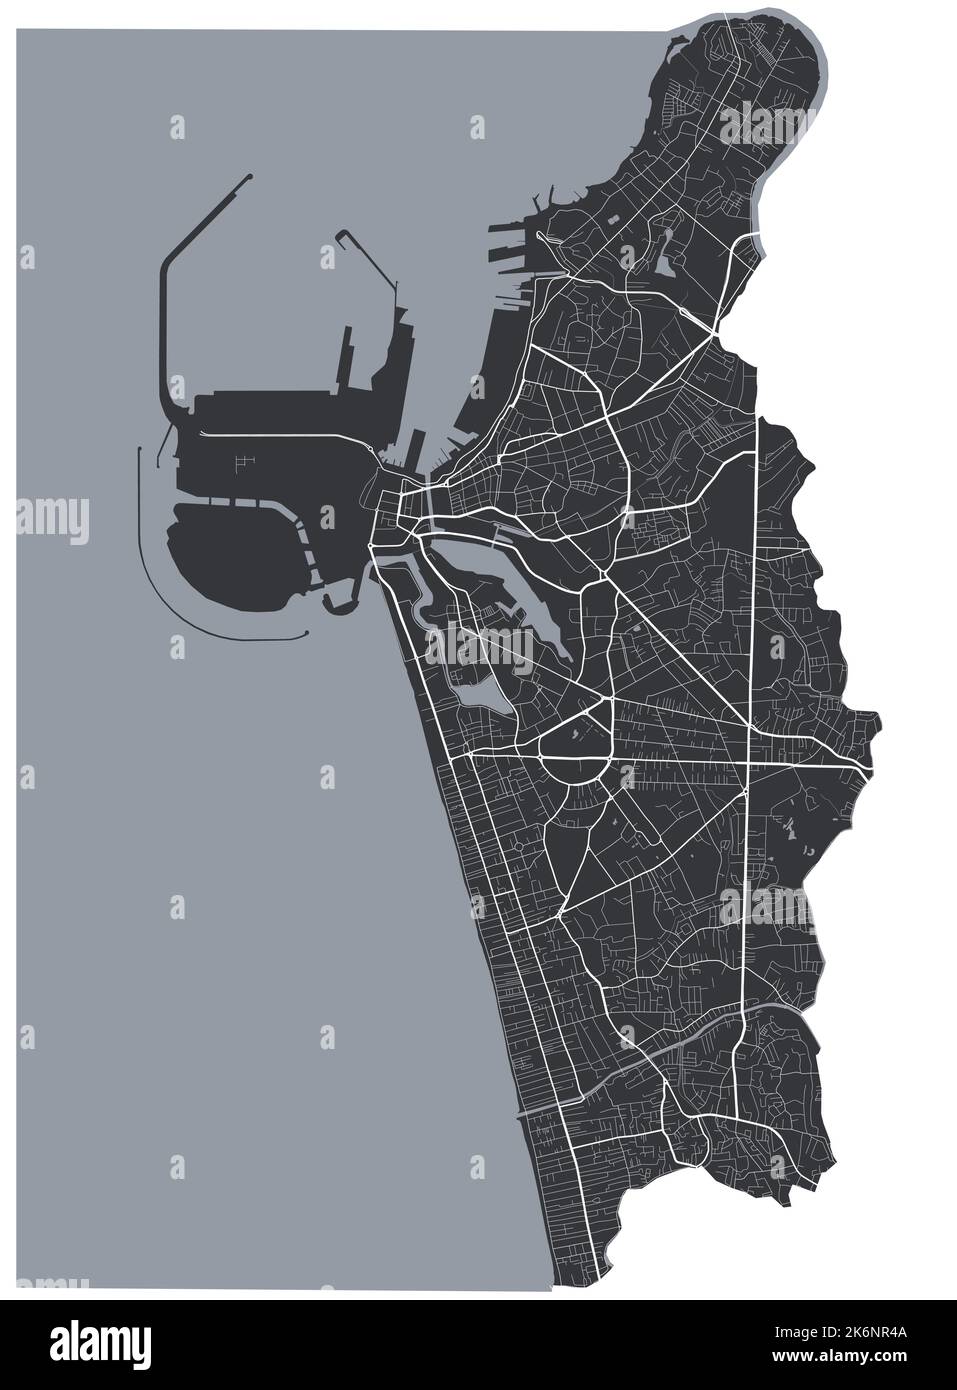 Mappa vettoriale Colombo. Mappa vettoriale dettagliata dell'area amministrativa della città di Colombo. Poster sulla città con vista metropolitana sull'aria. Terra nera con strade bianche e. Illustrazione Vettoriale